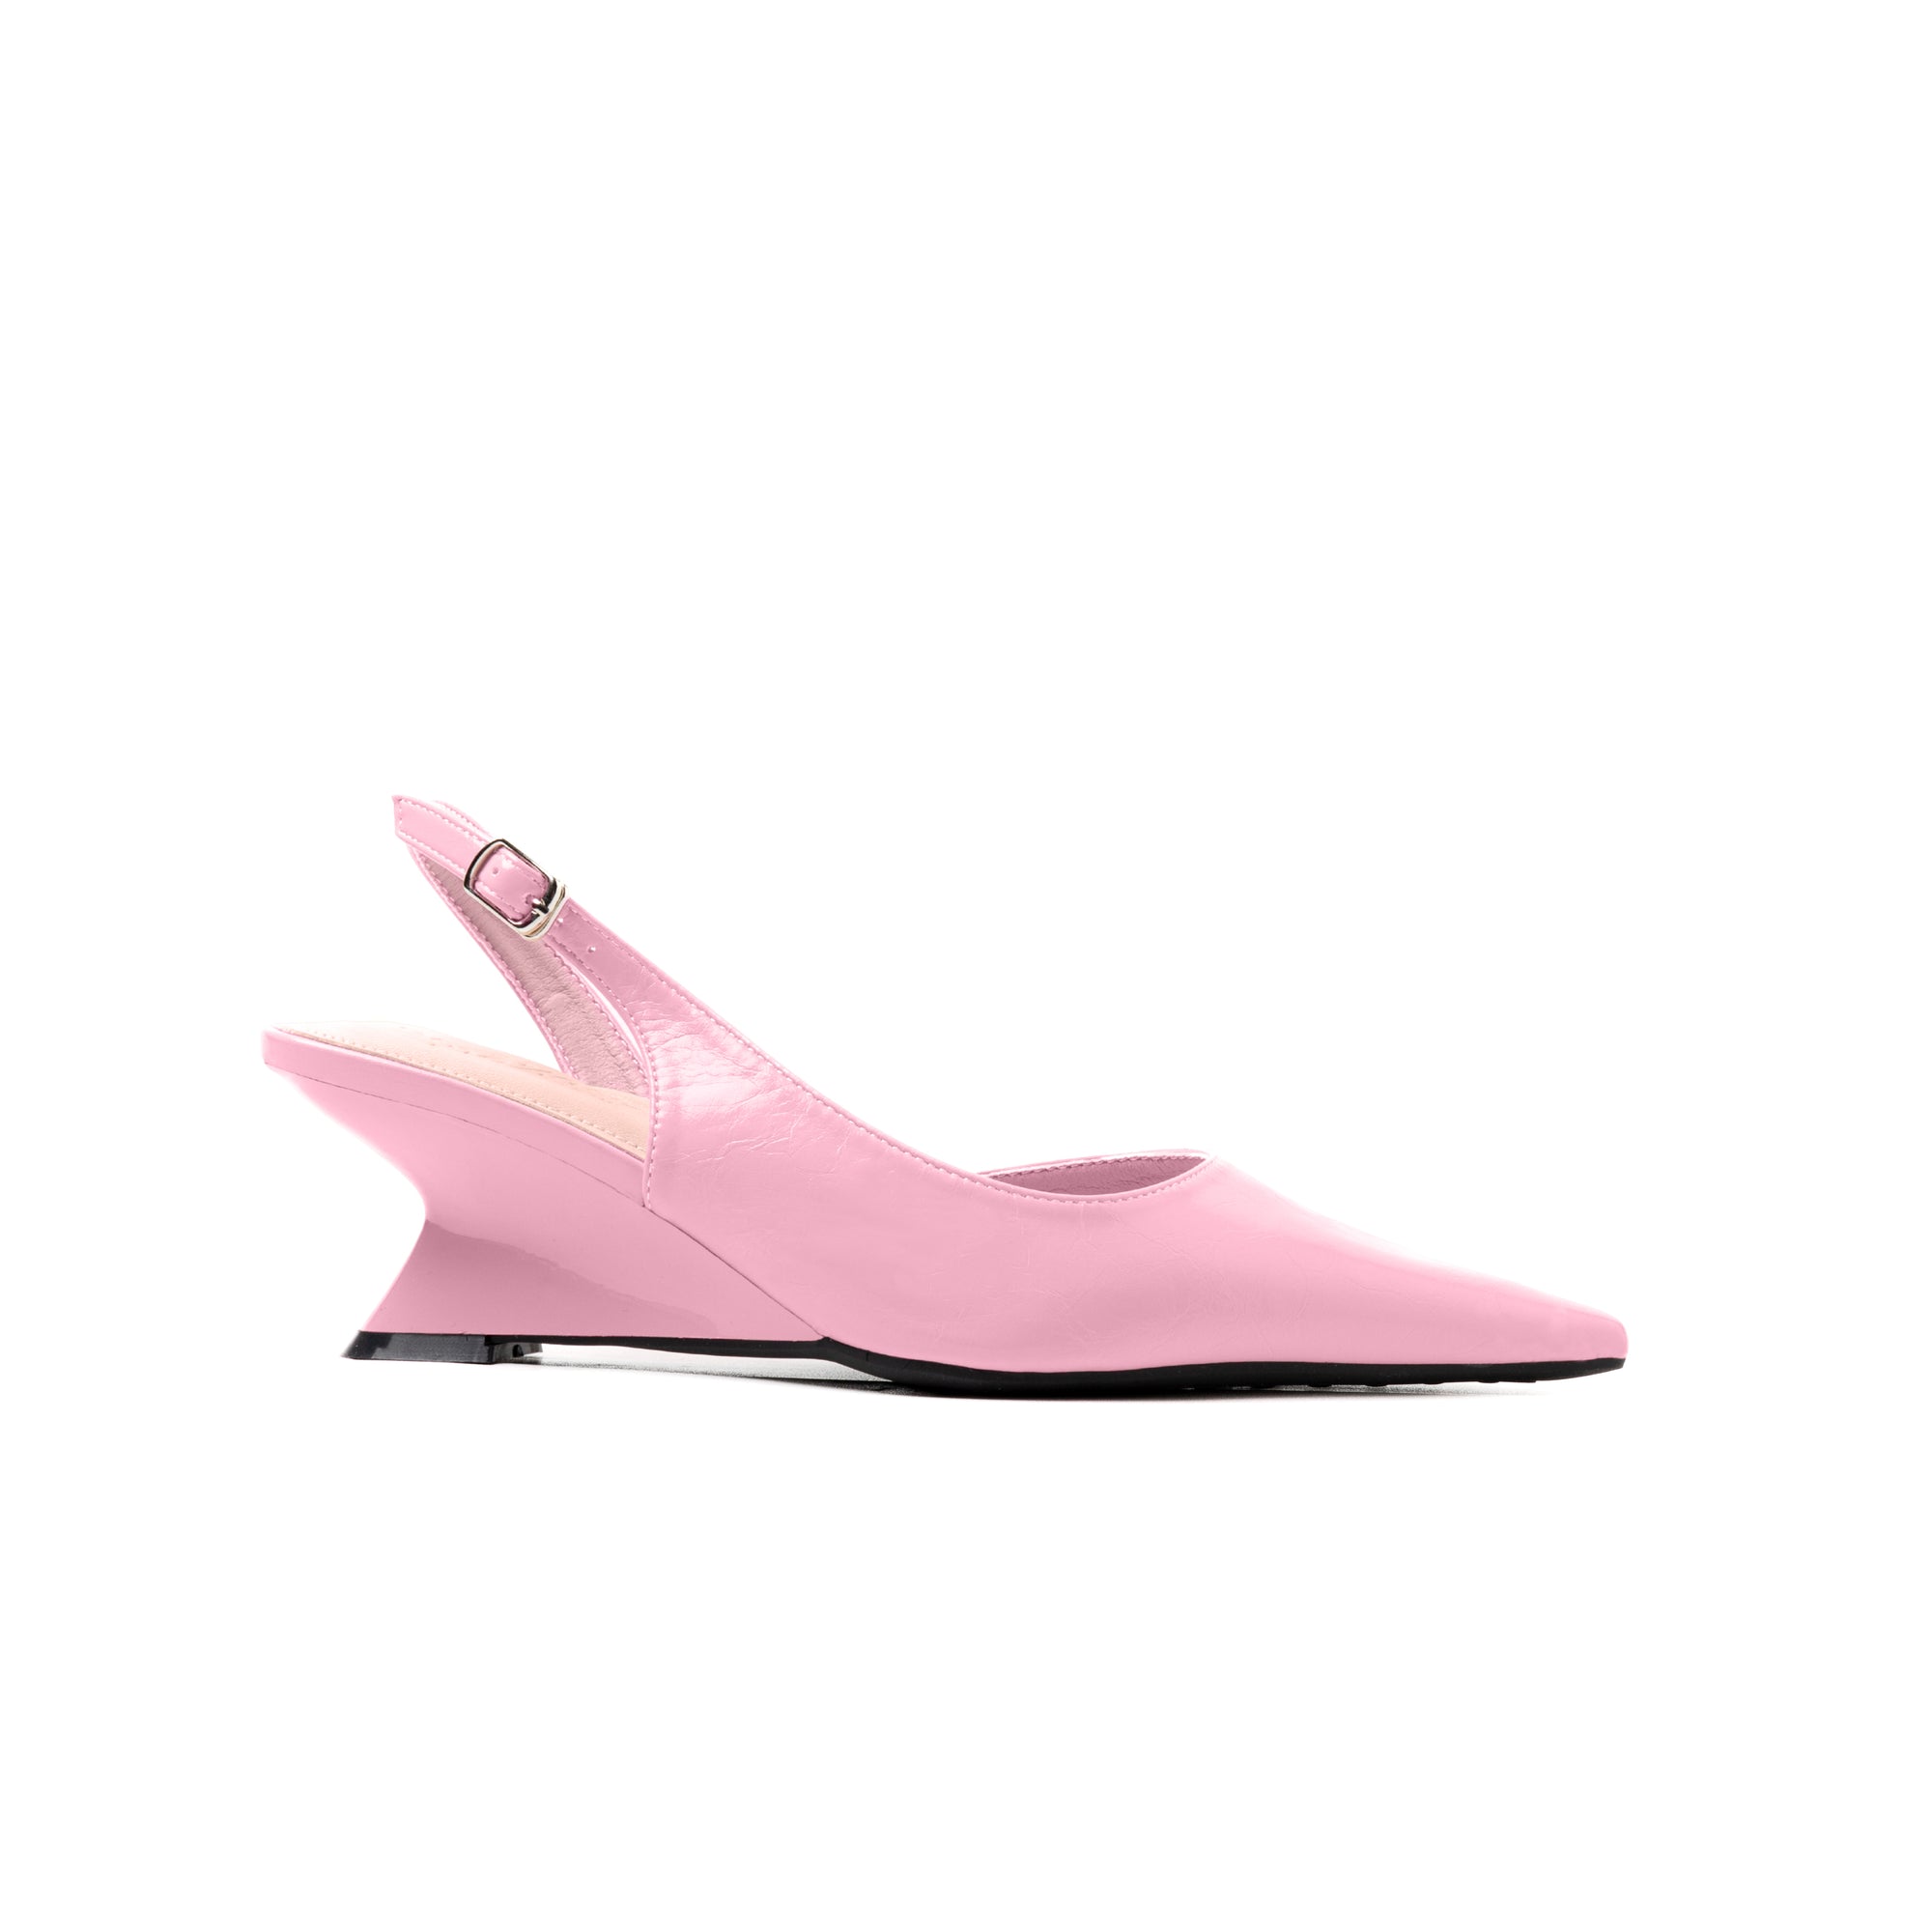 Welda Wedge Heels Pink Lady - PowerPad™